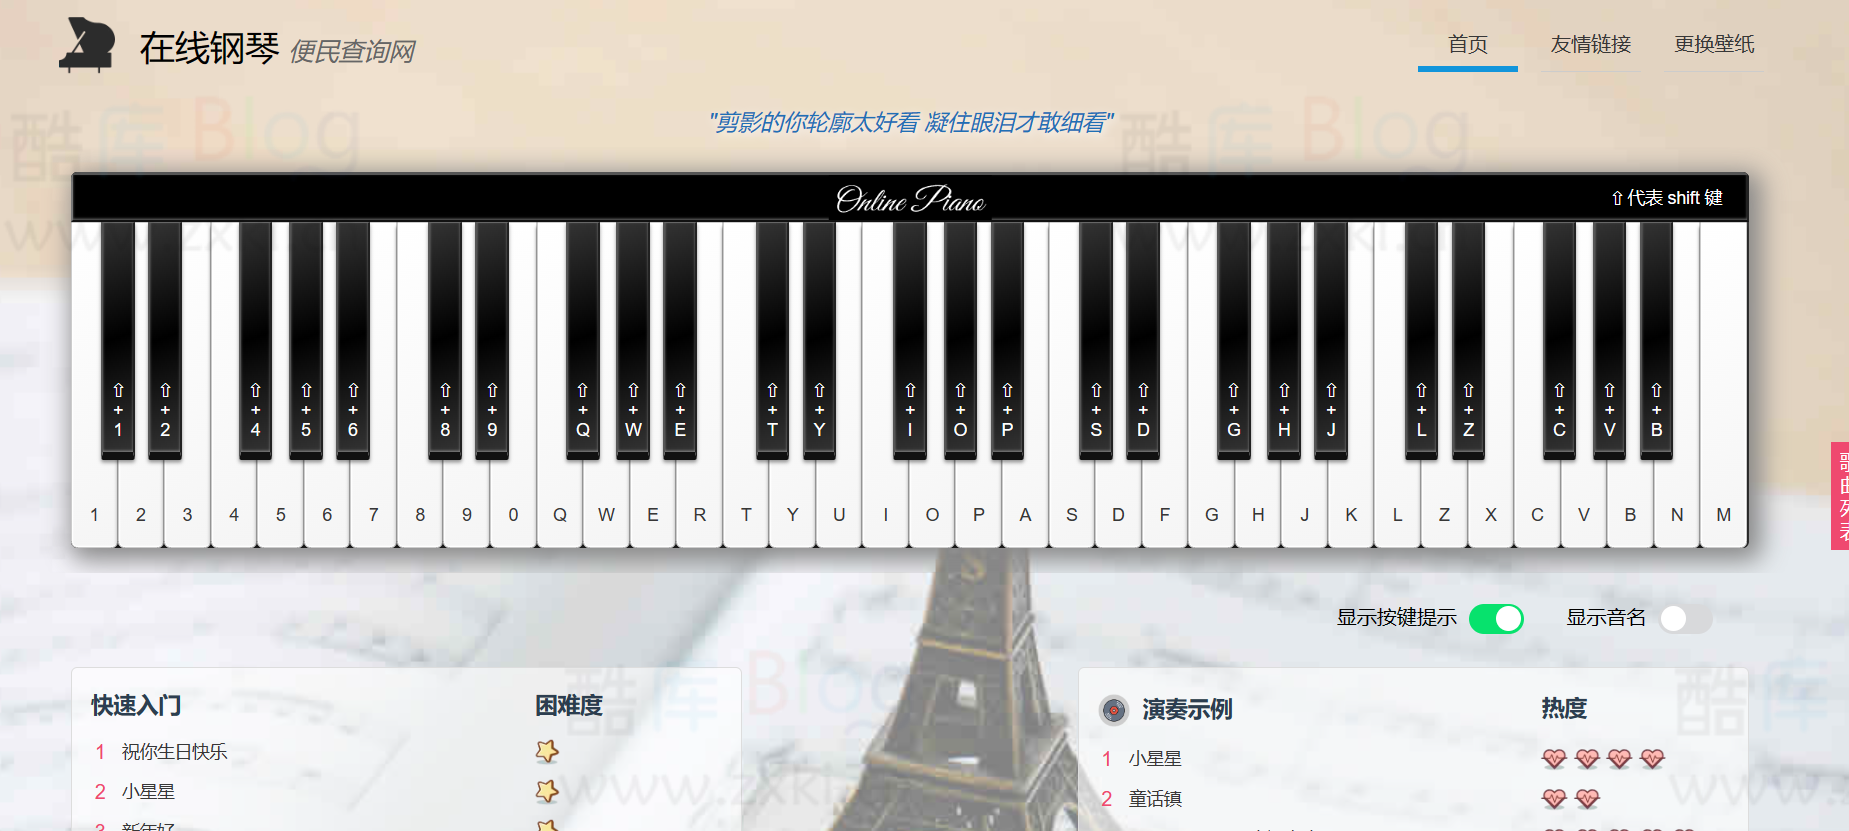 AutoPiano-在线弹钢琴模拟器网站源码 第2张插图